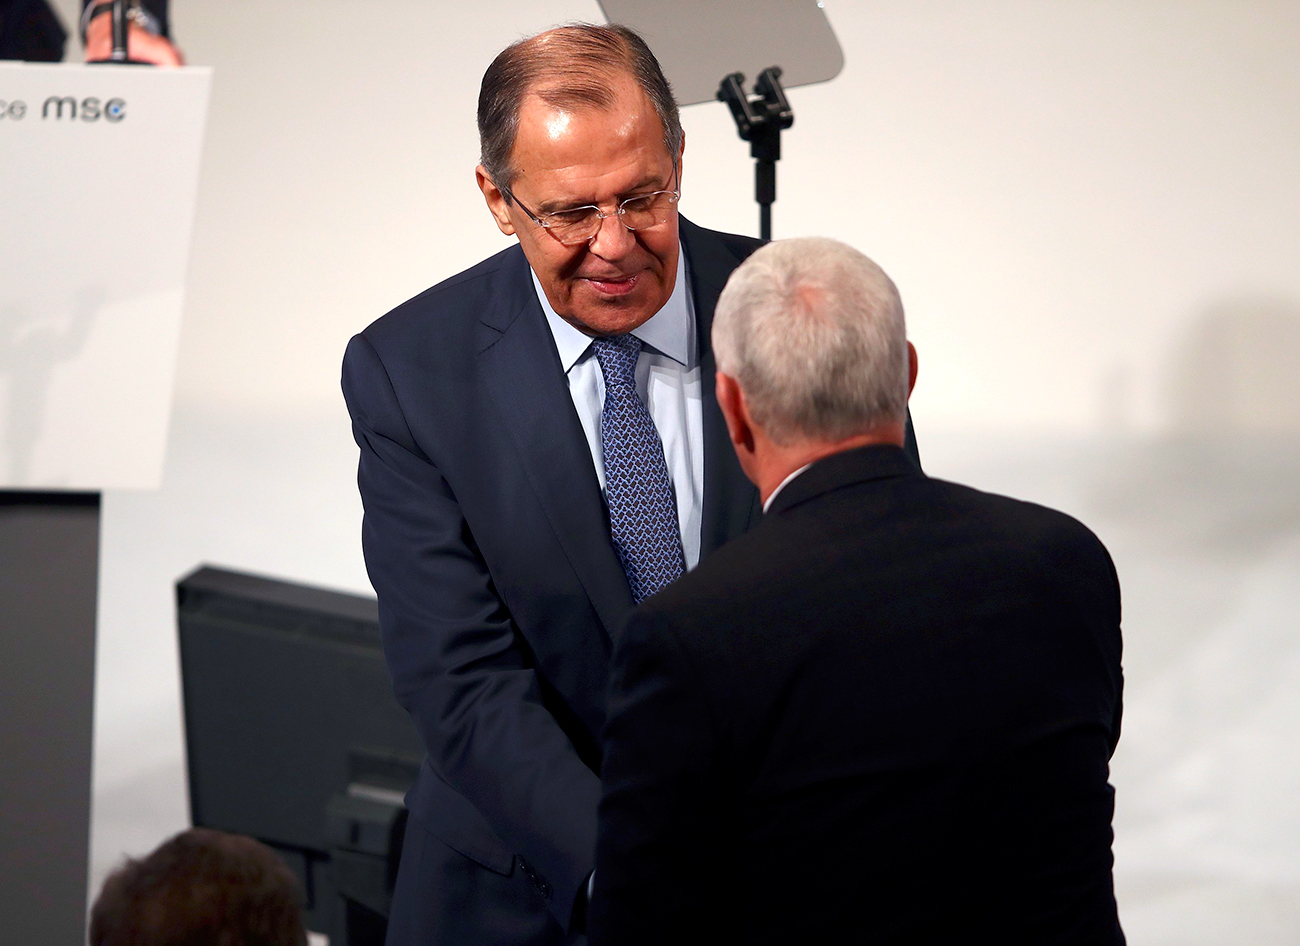 El ministro de Asuntos Exteriores ruso, Serguéi Lavrov, con el vicepresidente de EE UU, Mike Pence, durante la Conferencia anual de Seguridad de Múnich, el 18 de febrero de 2017.